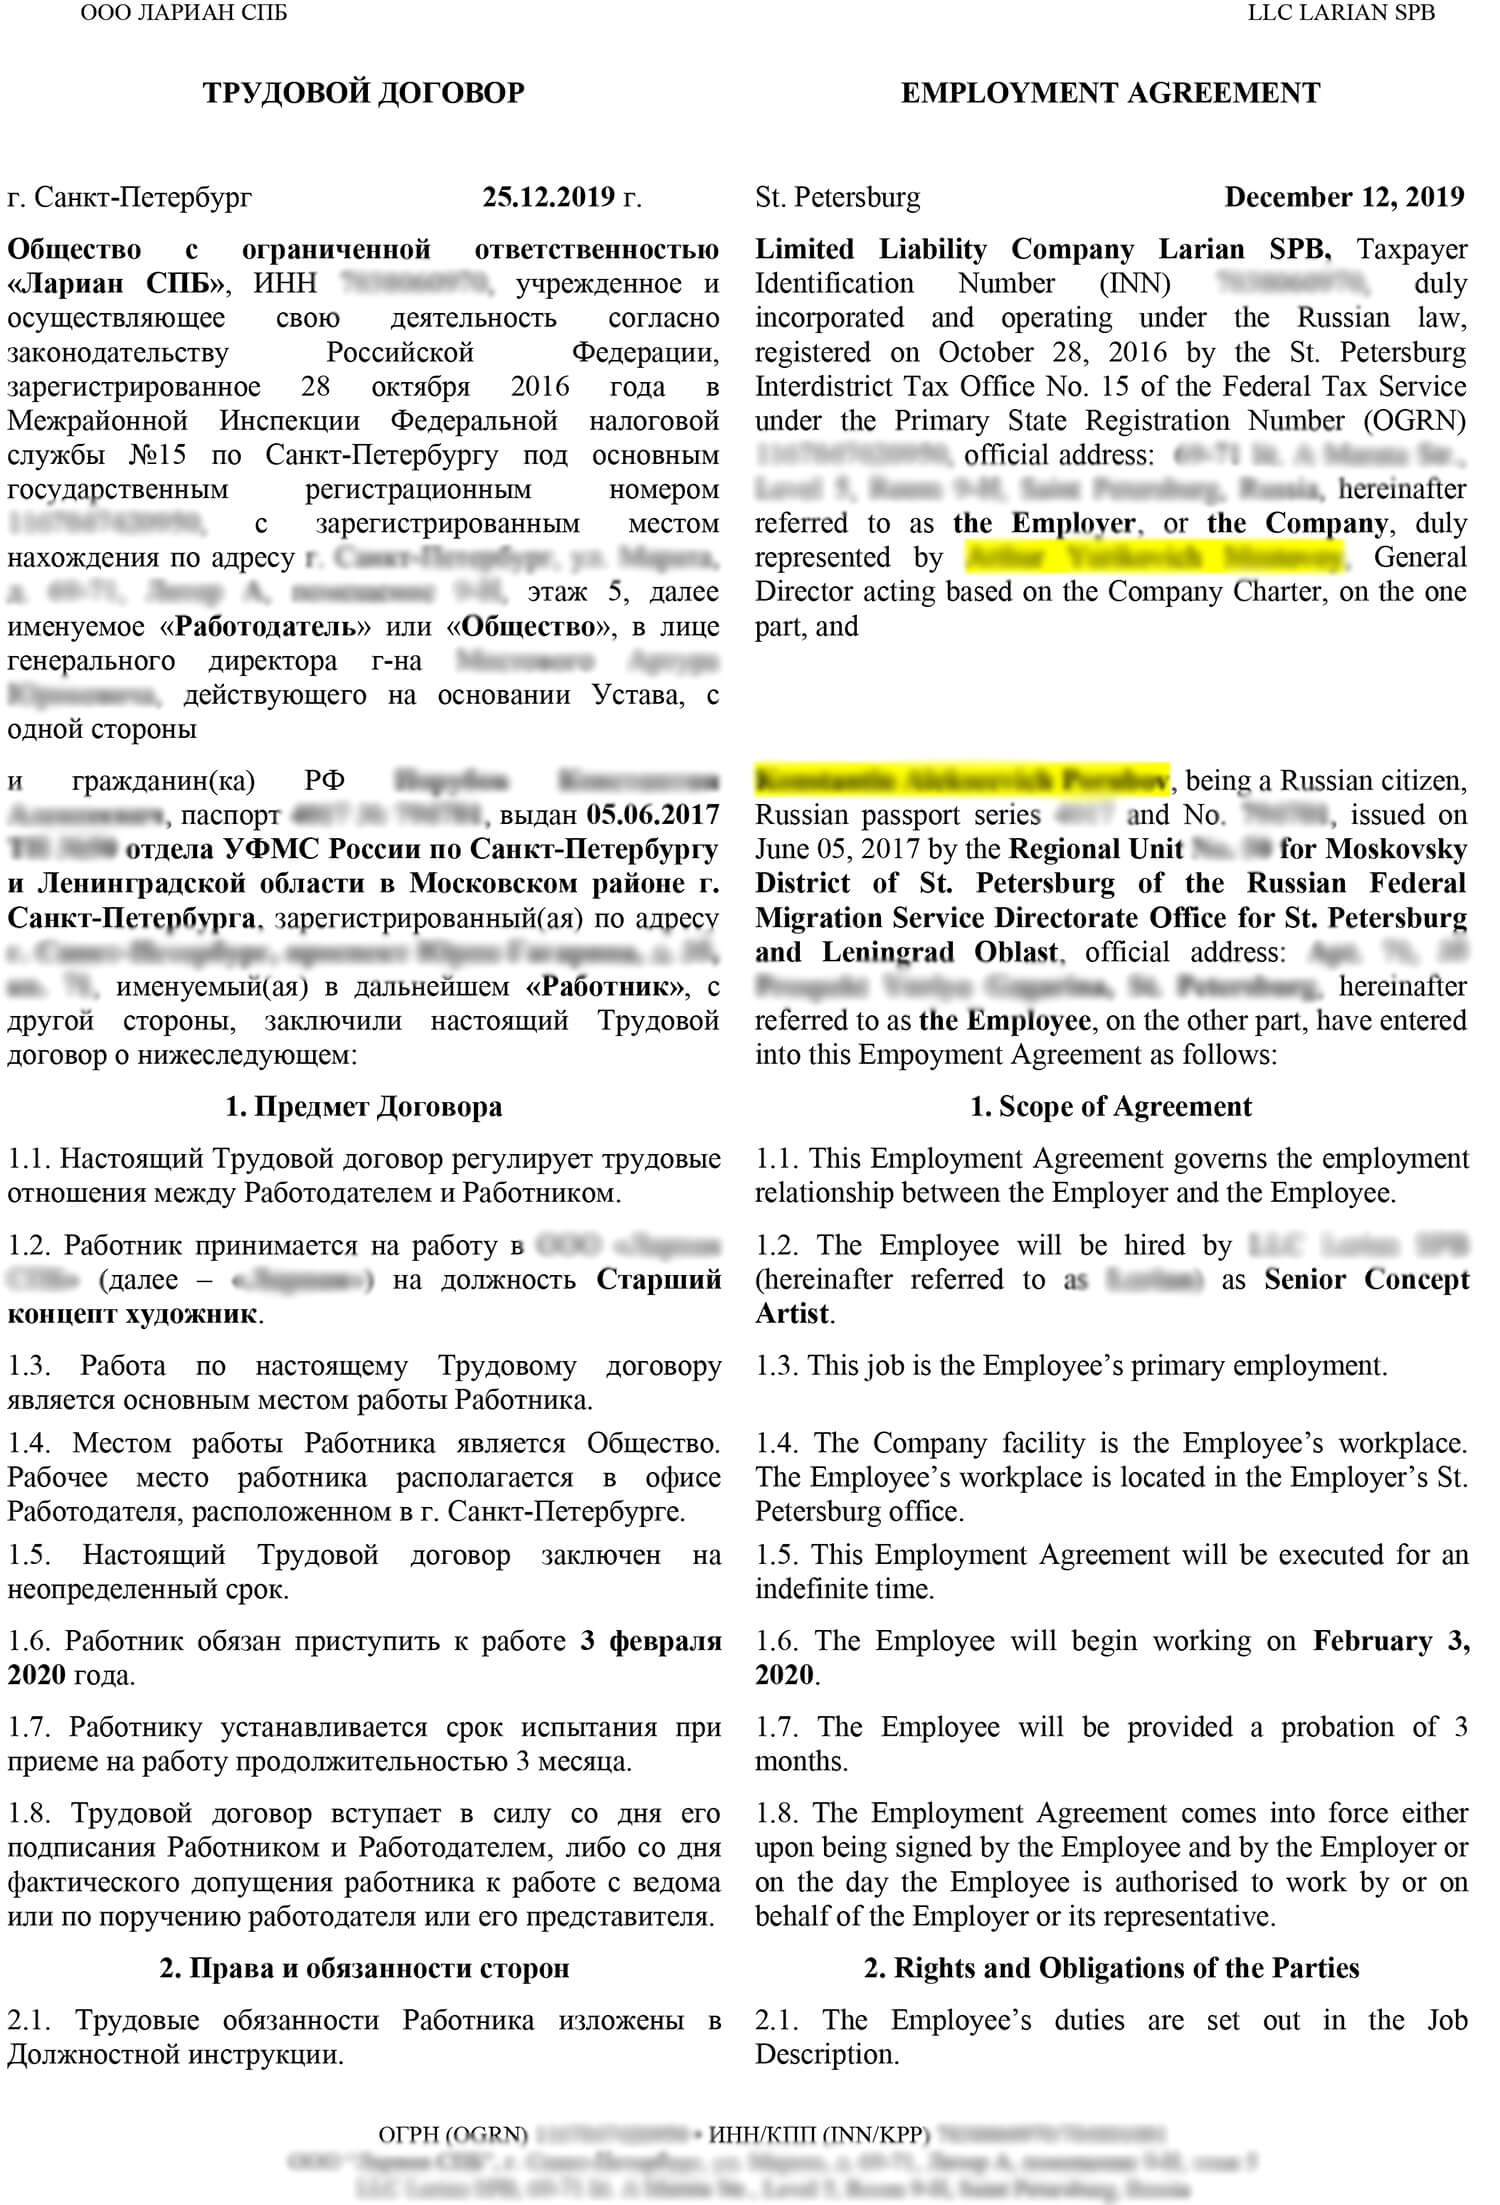 Фрагмент перевода договора с оформлением в две колонки